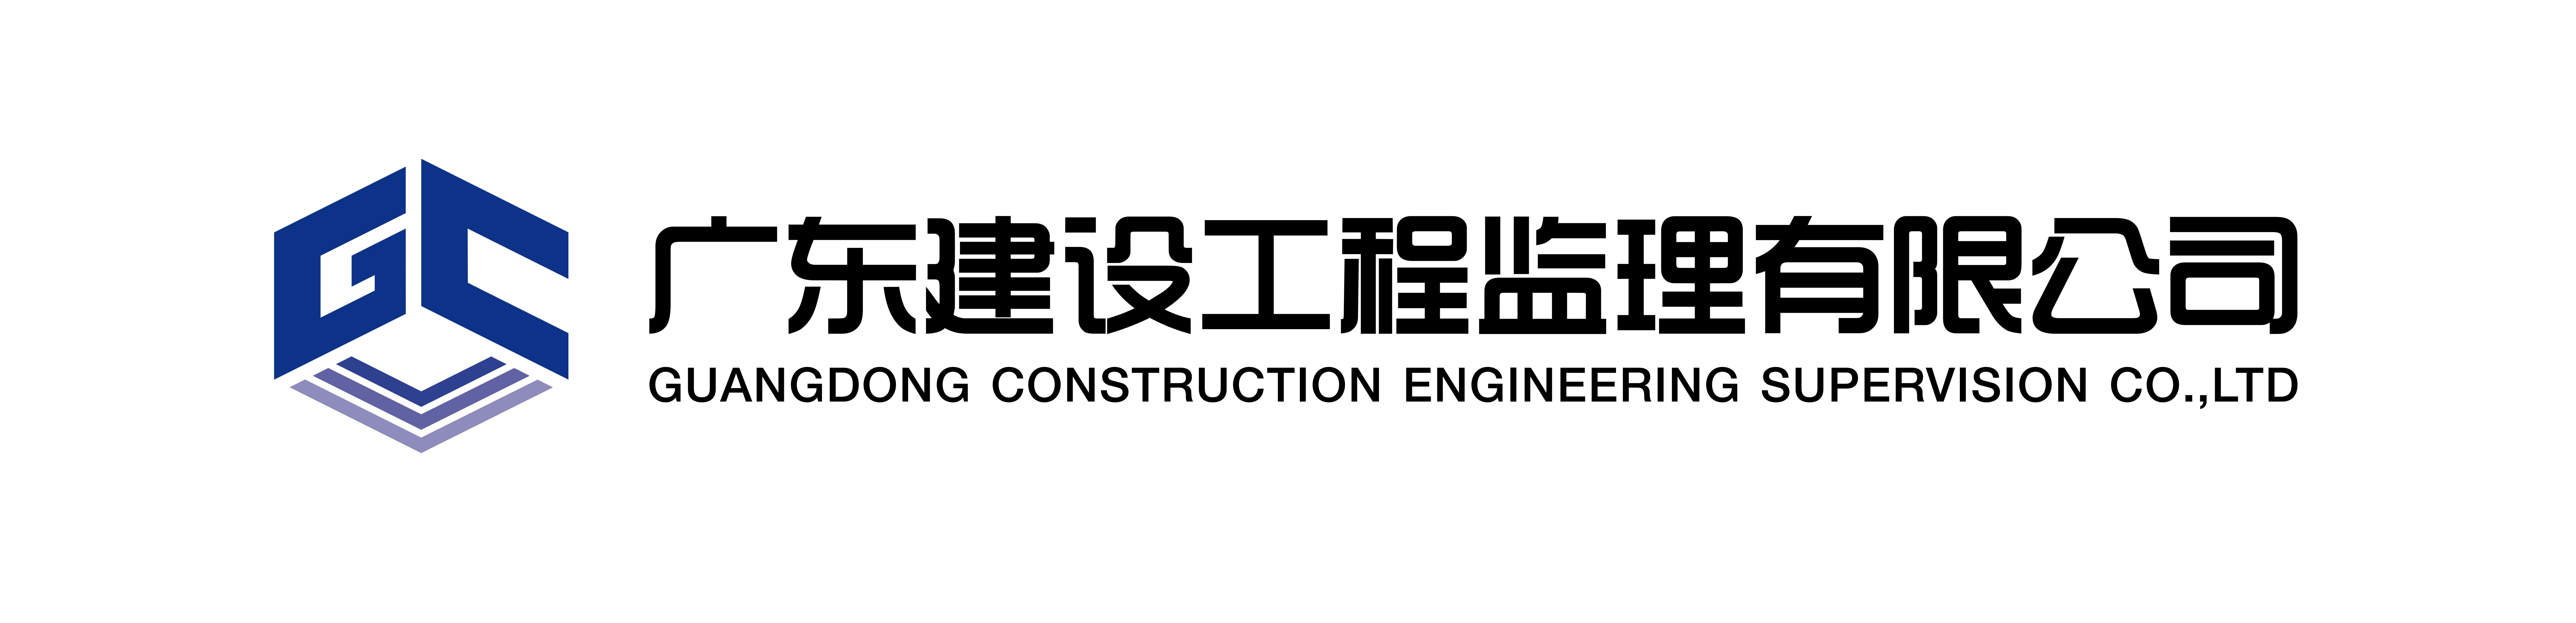 广东建设工程监理有限公司